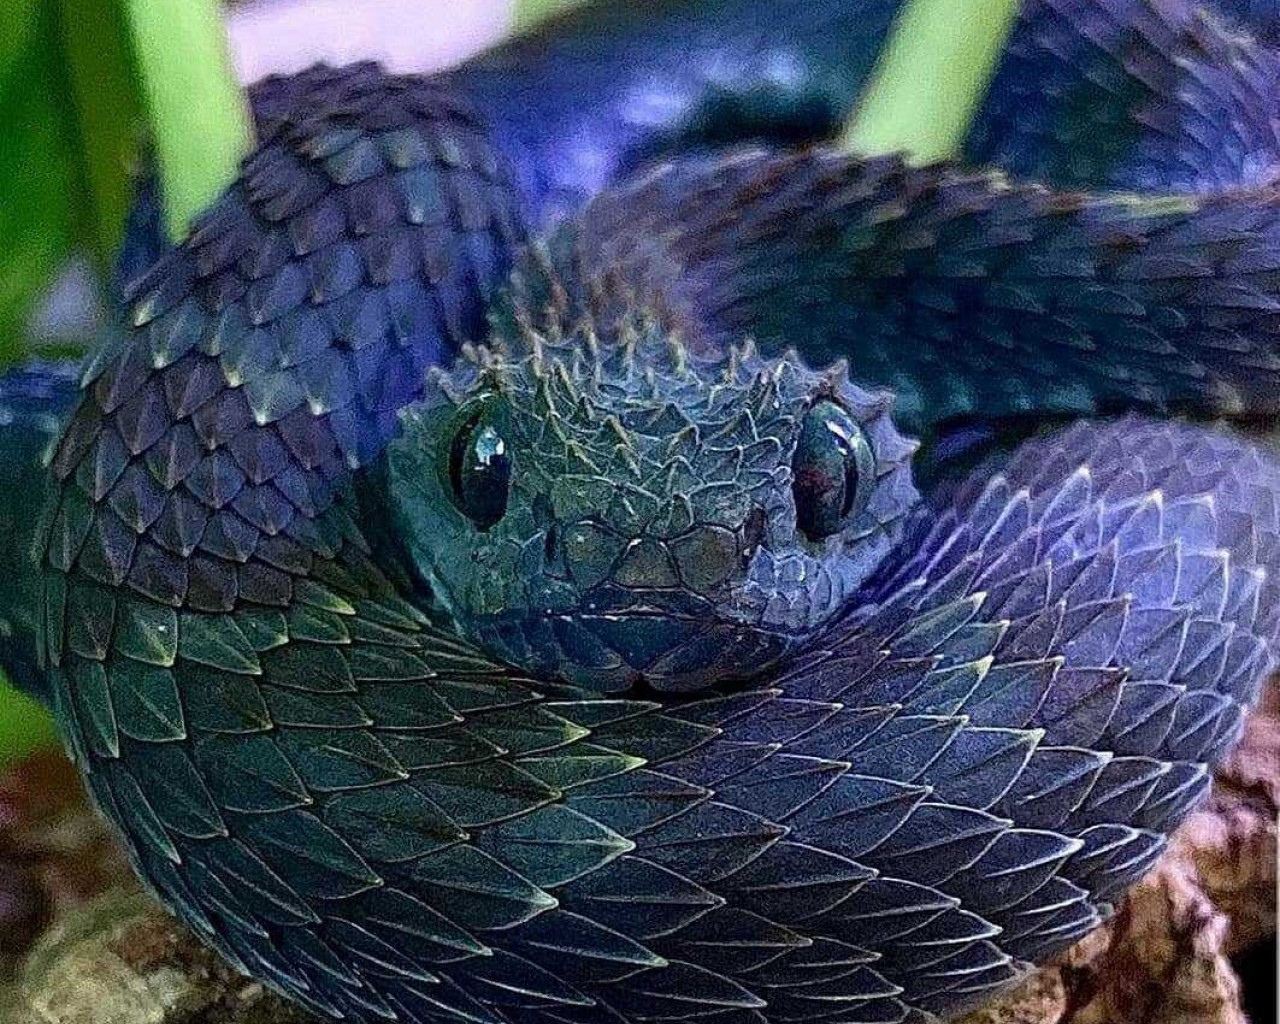 Змея - удивительные факты, типы и поведение этих таинственных созданий